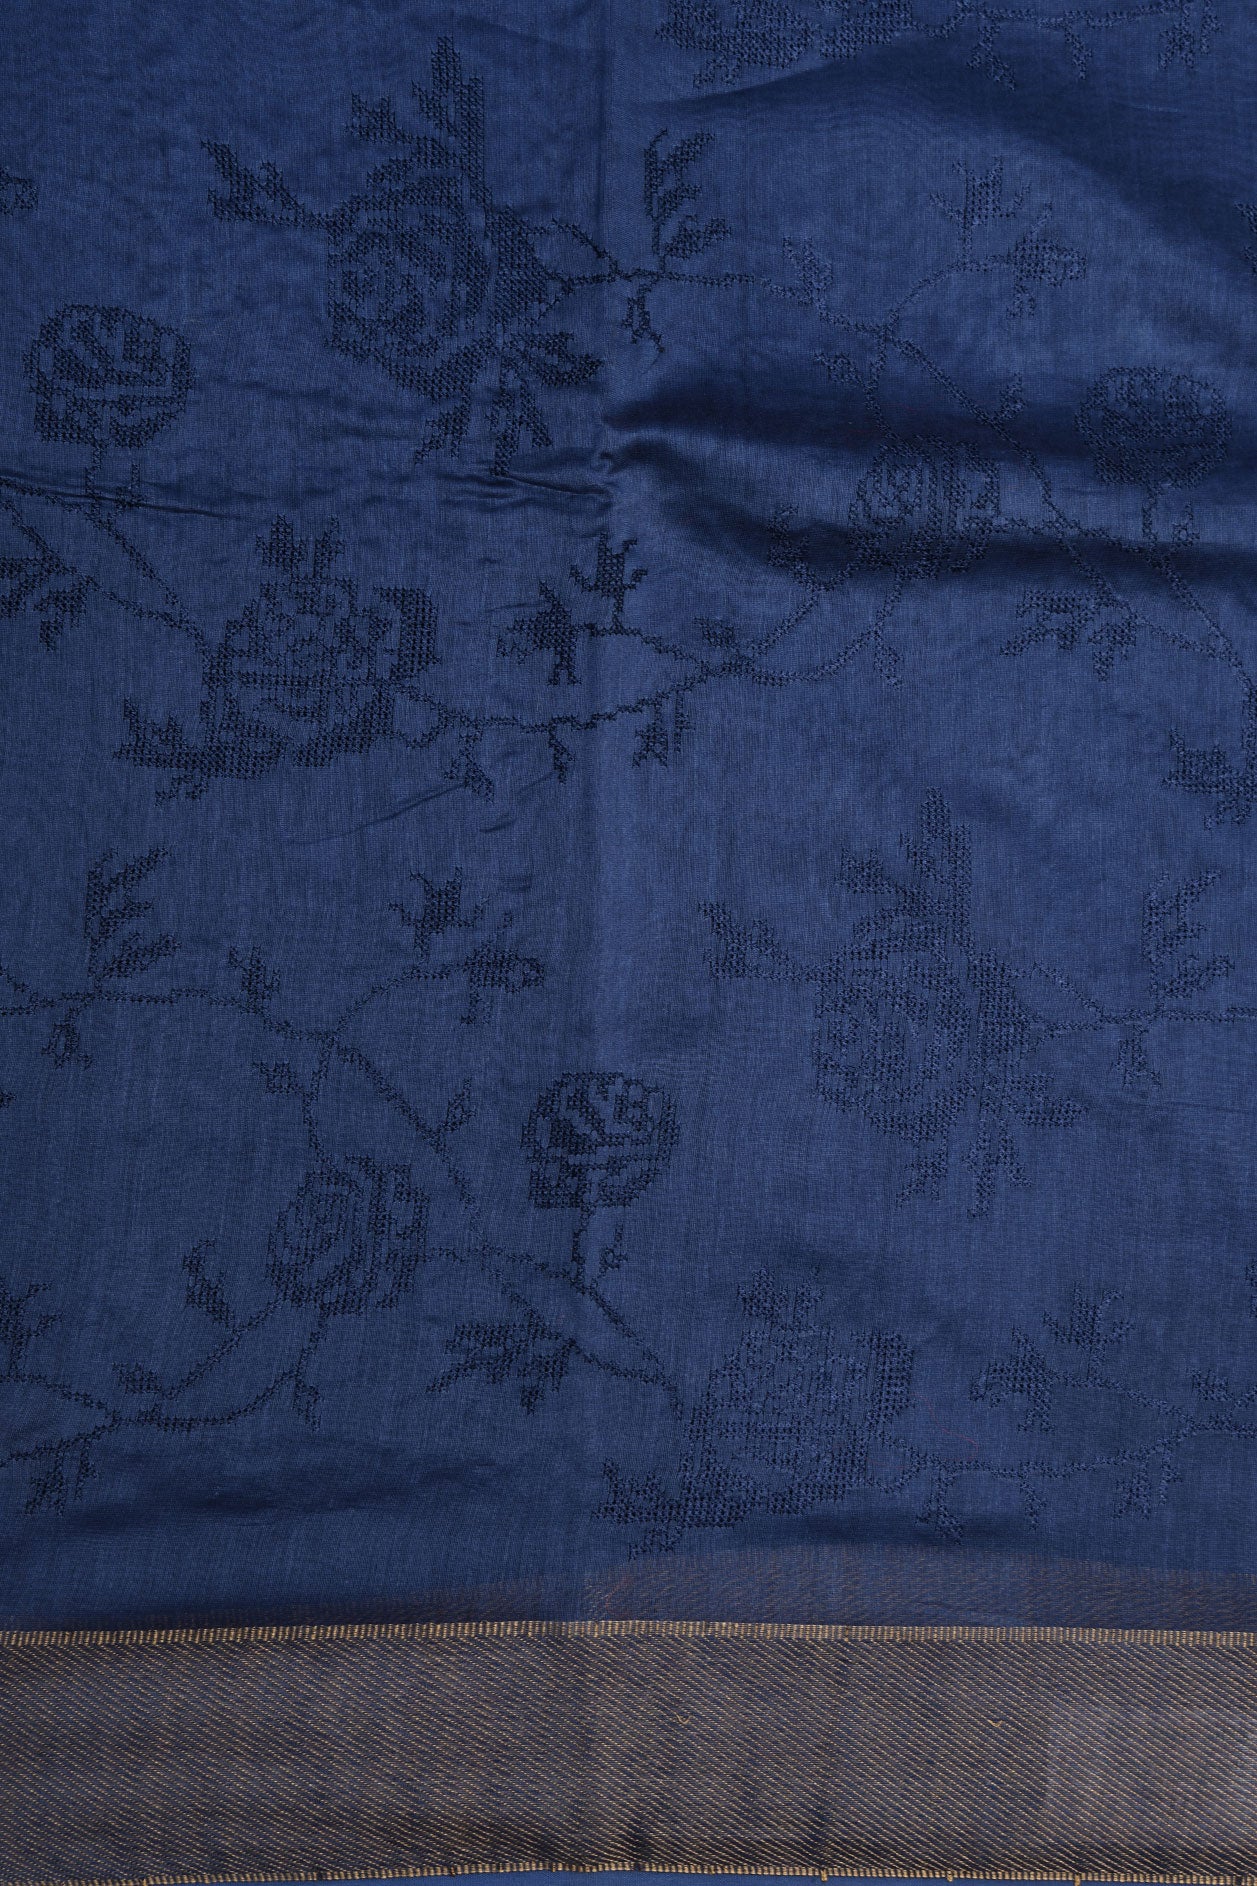 Embroidered Floral Design Indigo Blue Chanderi Silk Cotton Saree